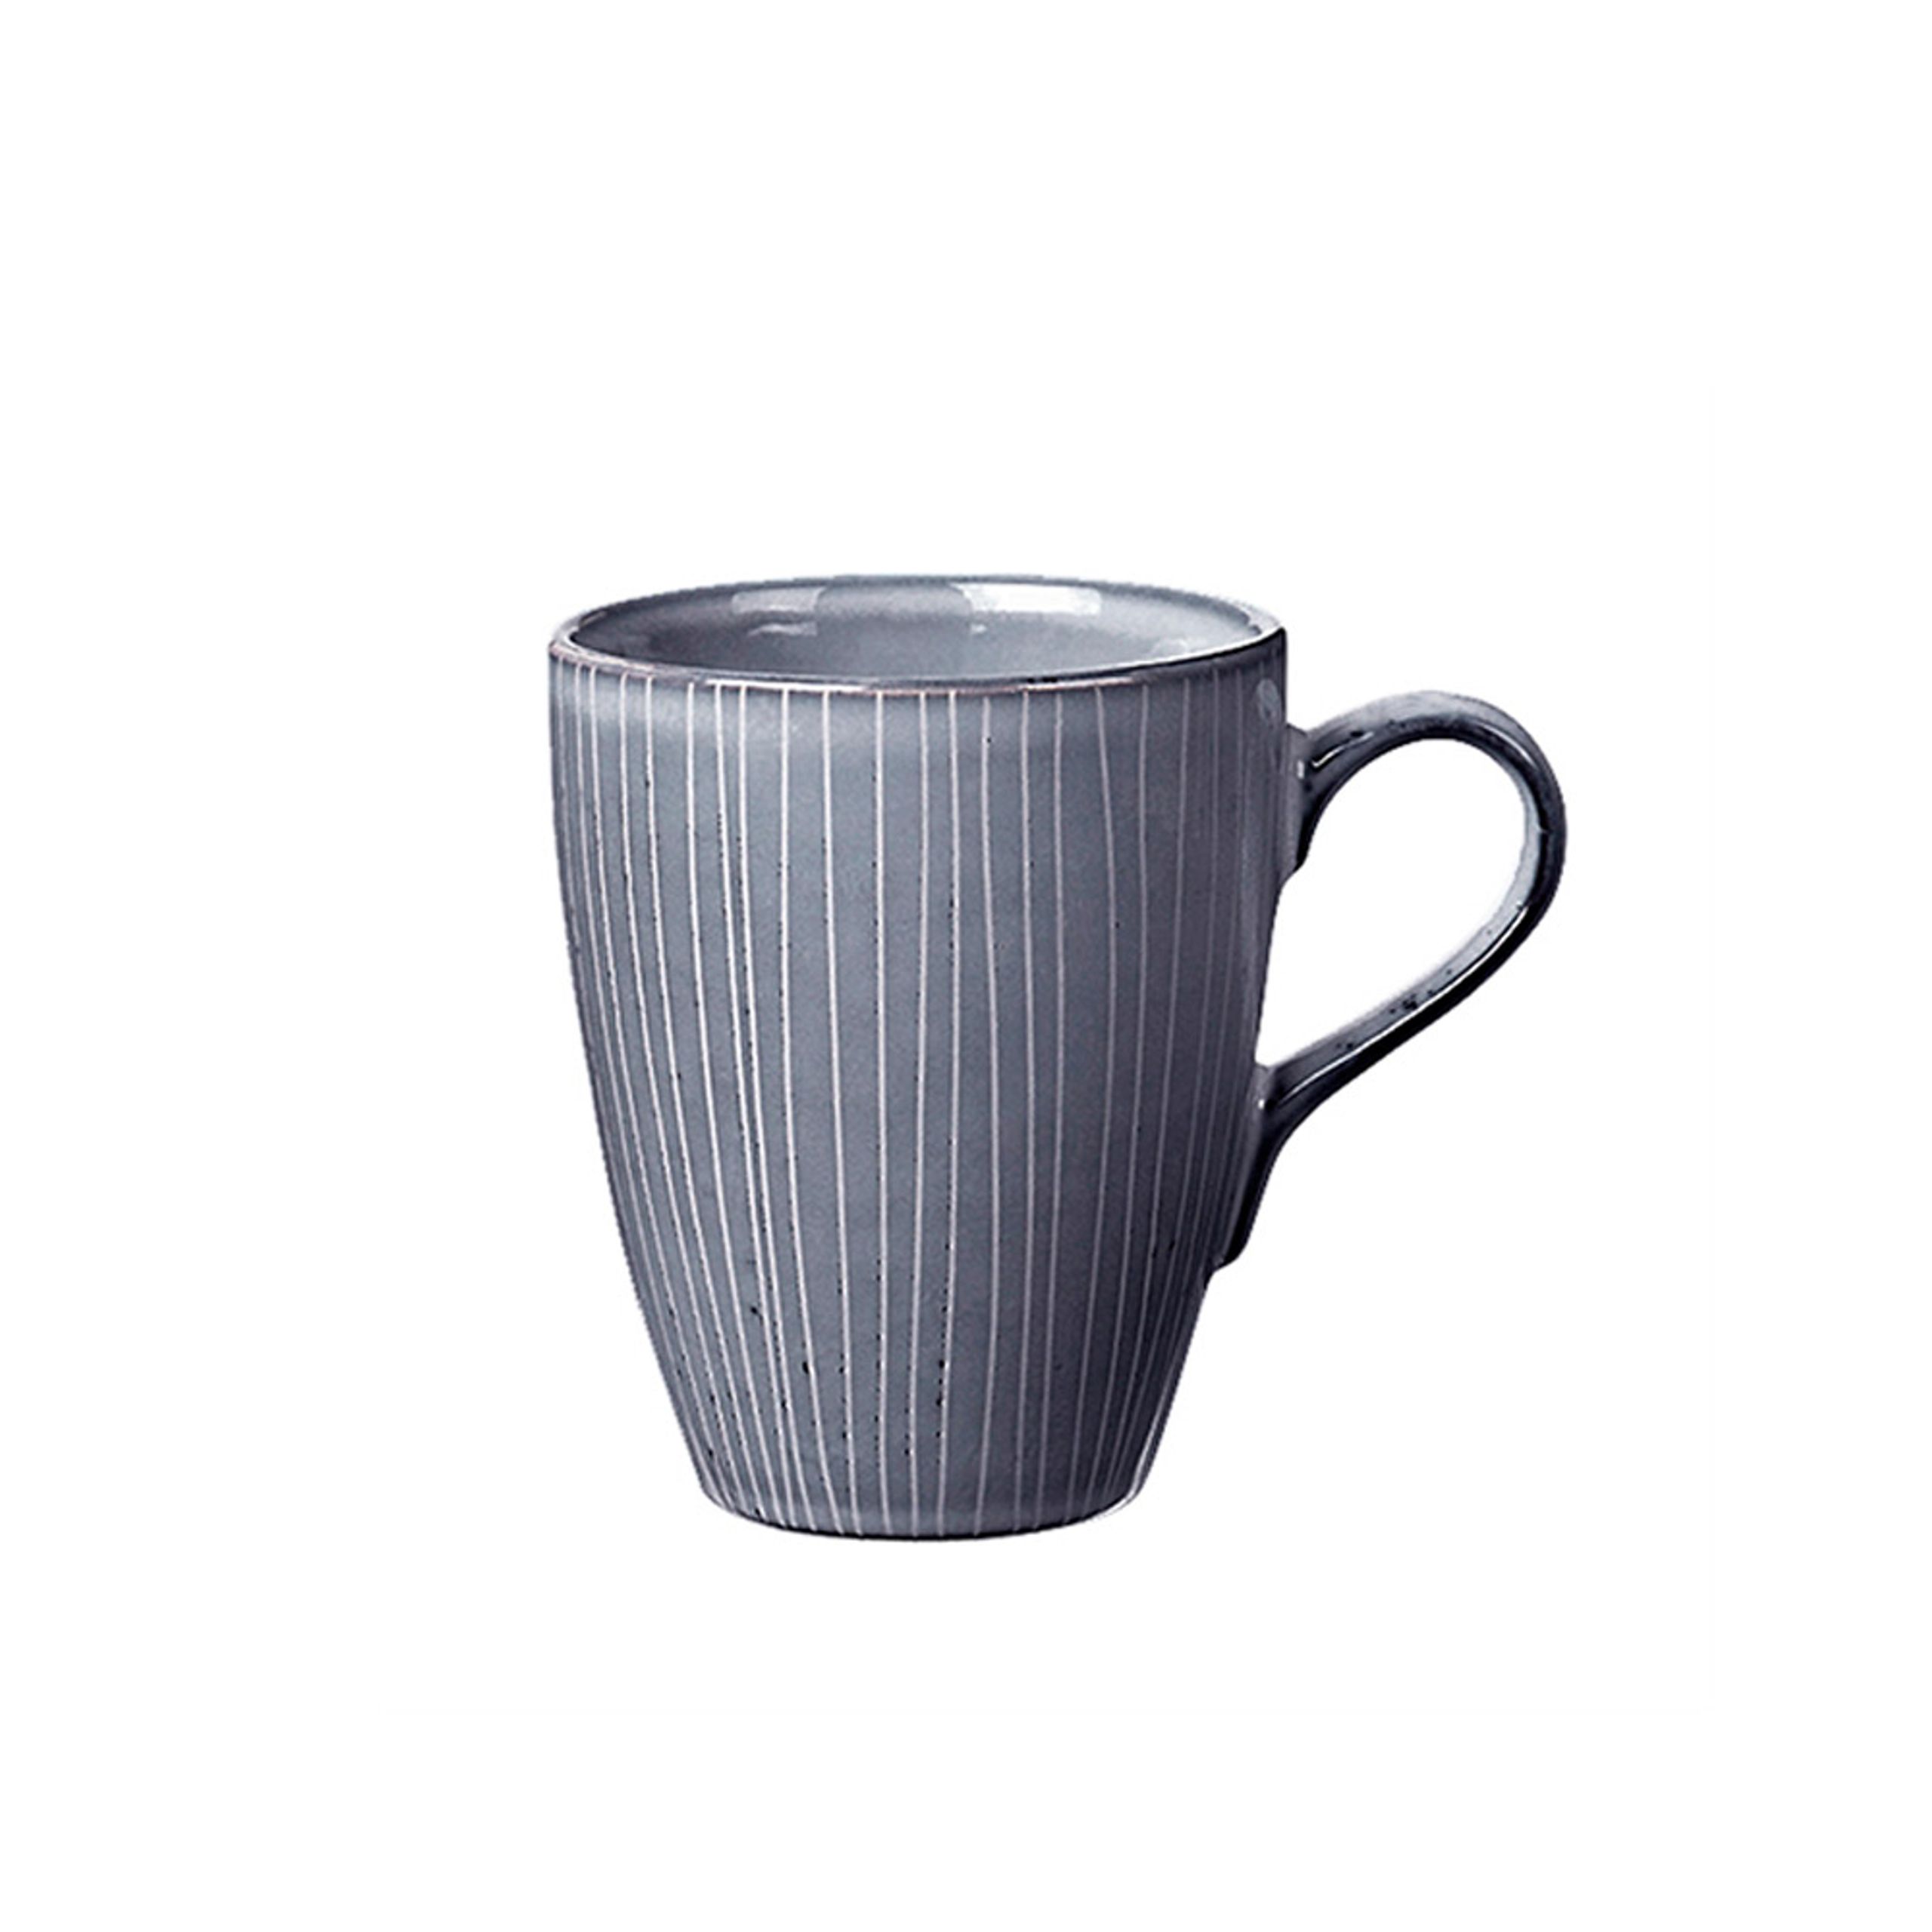 Broste CPH - Caneca - Nordic Sea - Mug - Nordic Sea - With handle